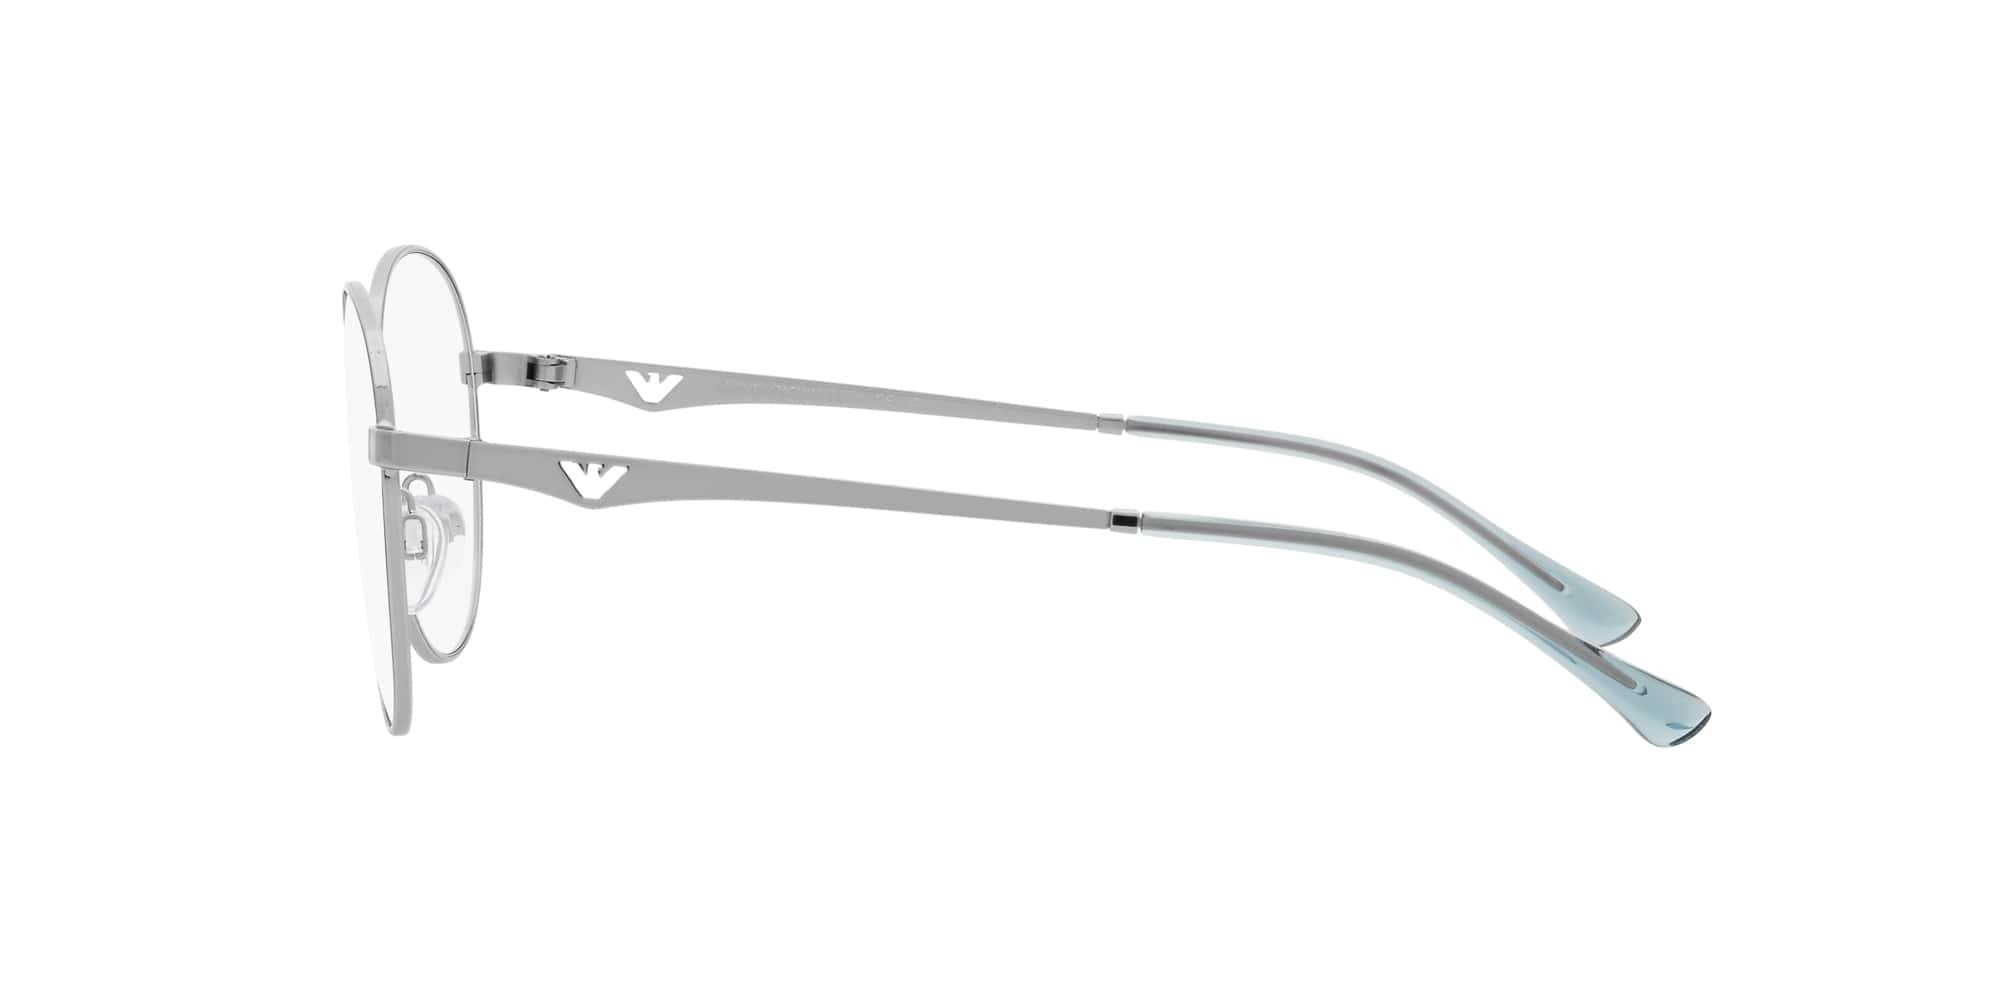 Das Bild zeigt die Korrektionsbrille EA1144 3015 von der Marke Emporio Armani in Silber.